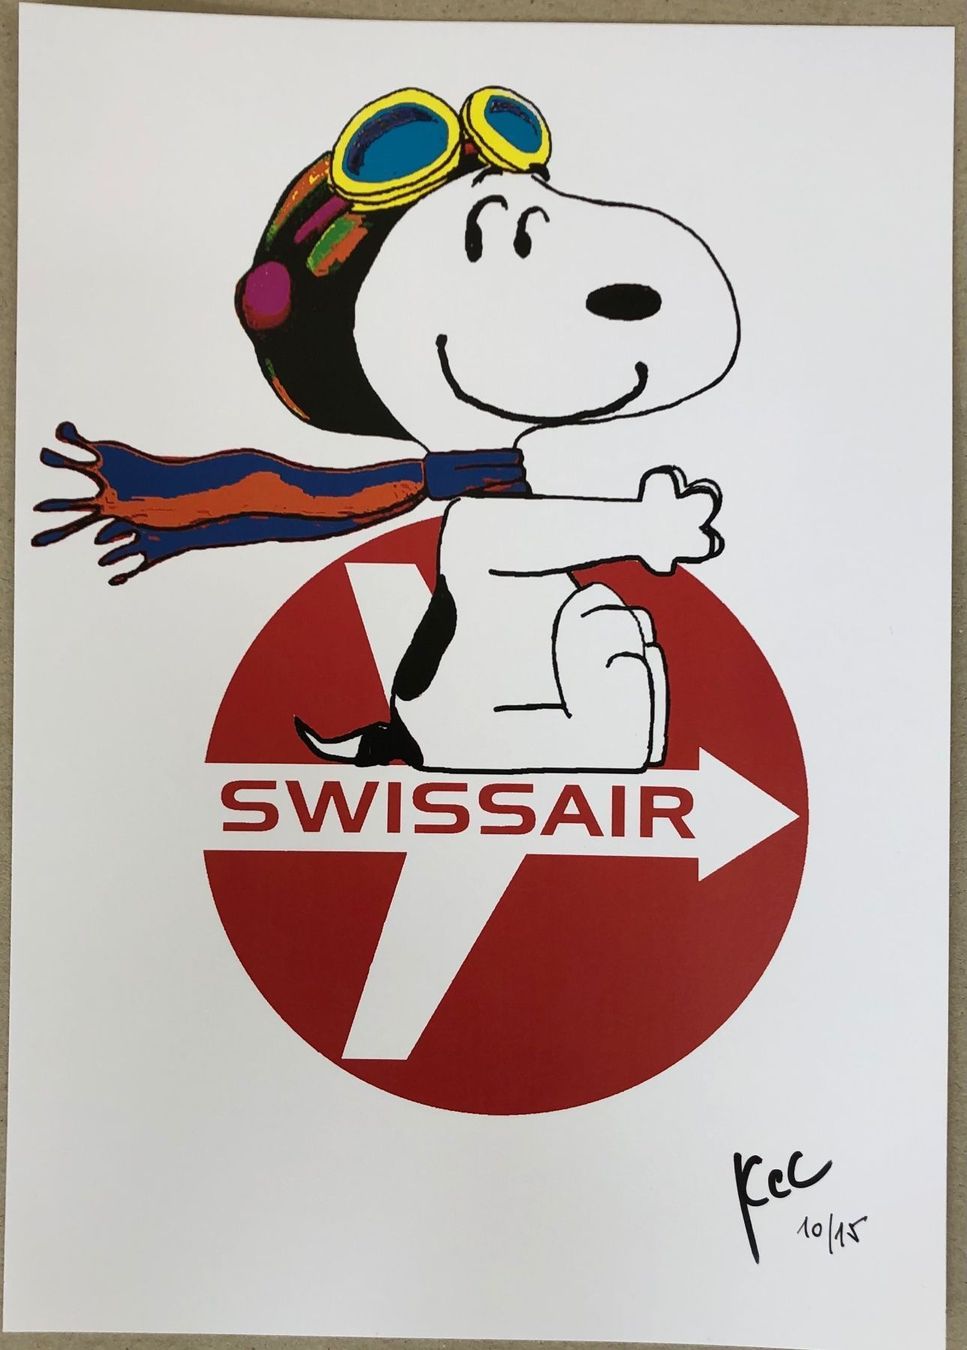 KeC: Snoopy Swissair is calling 10/15